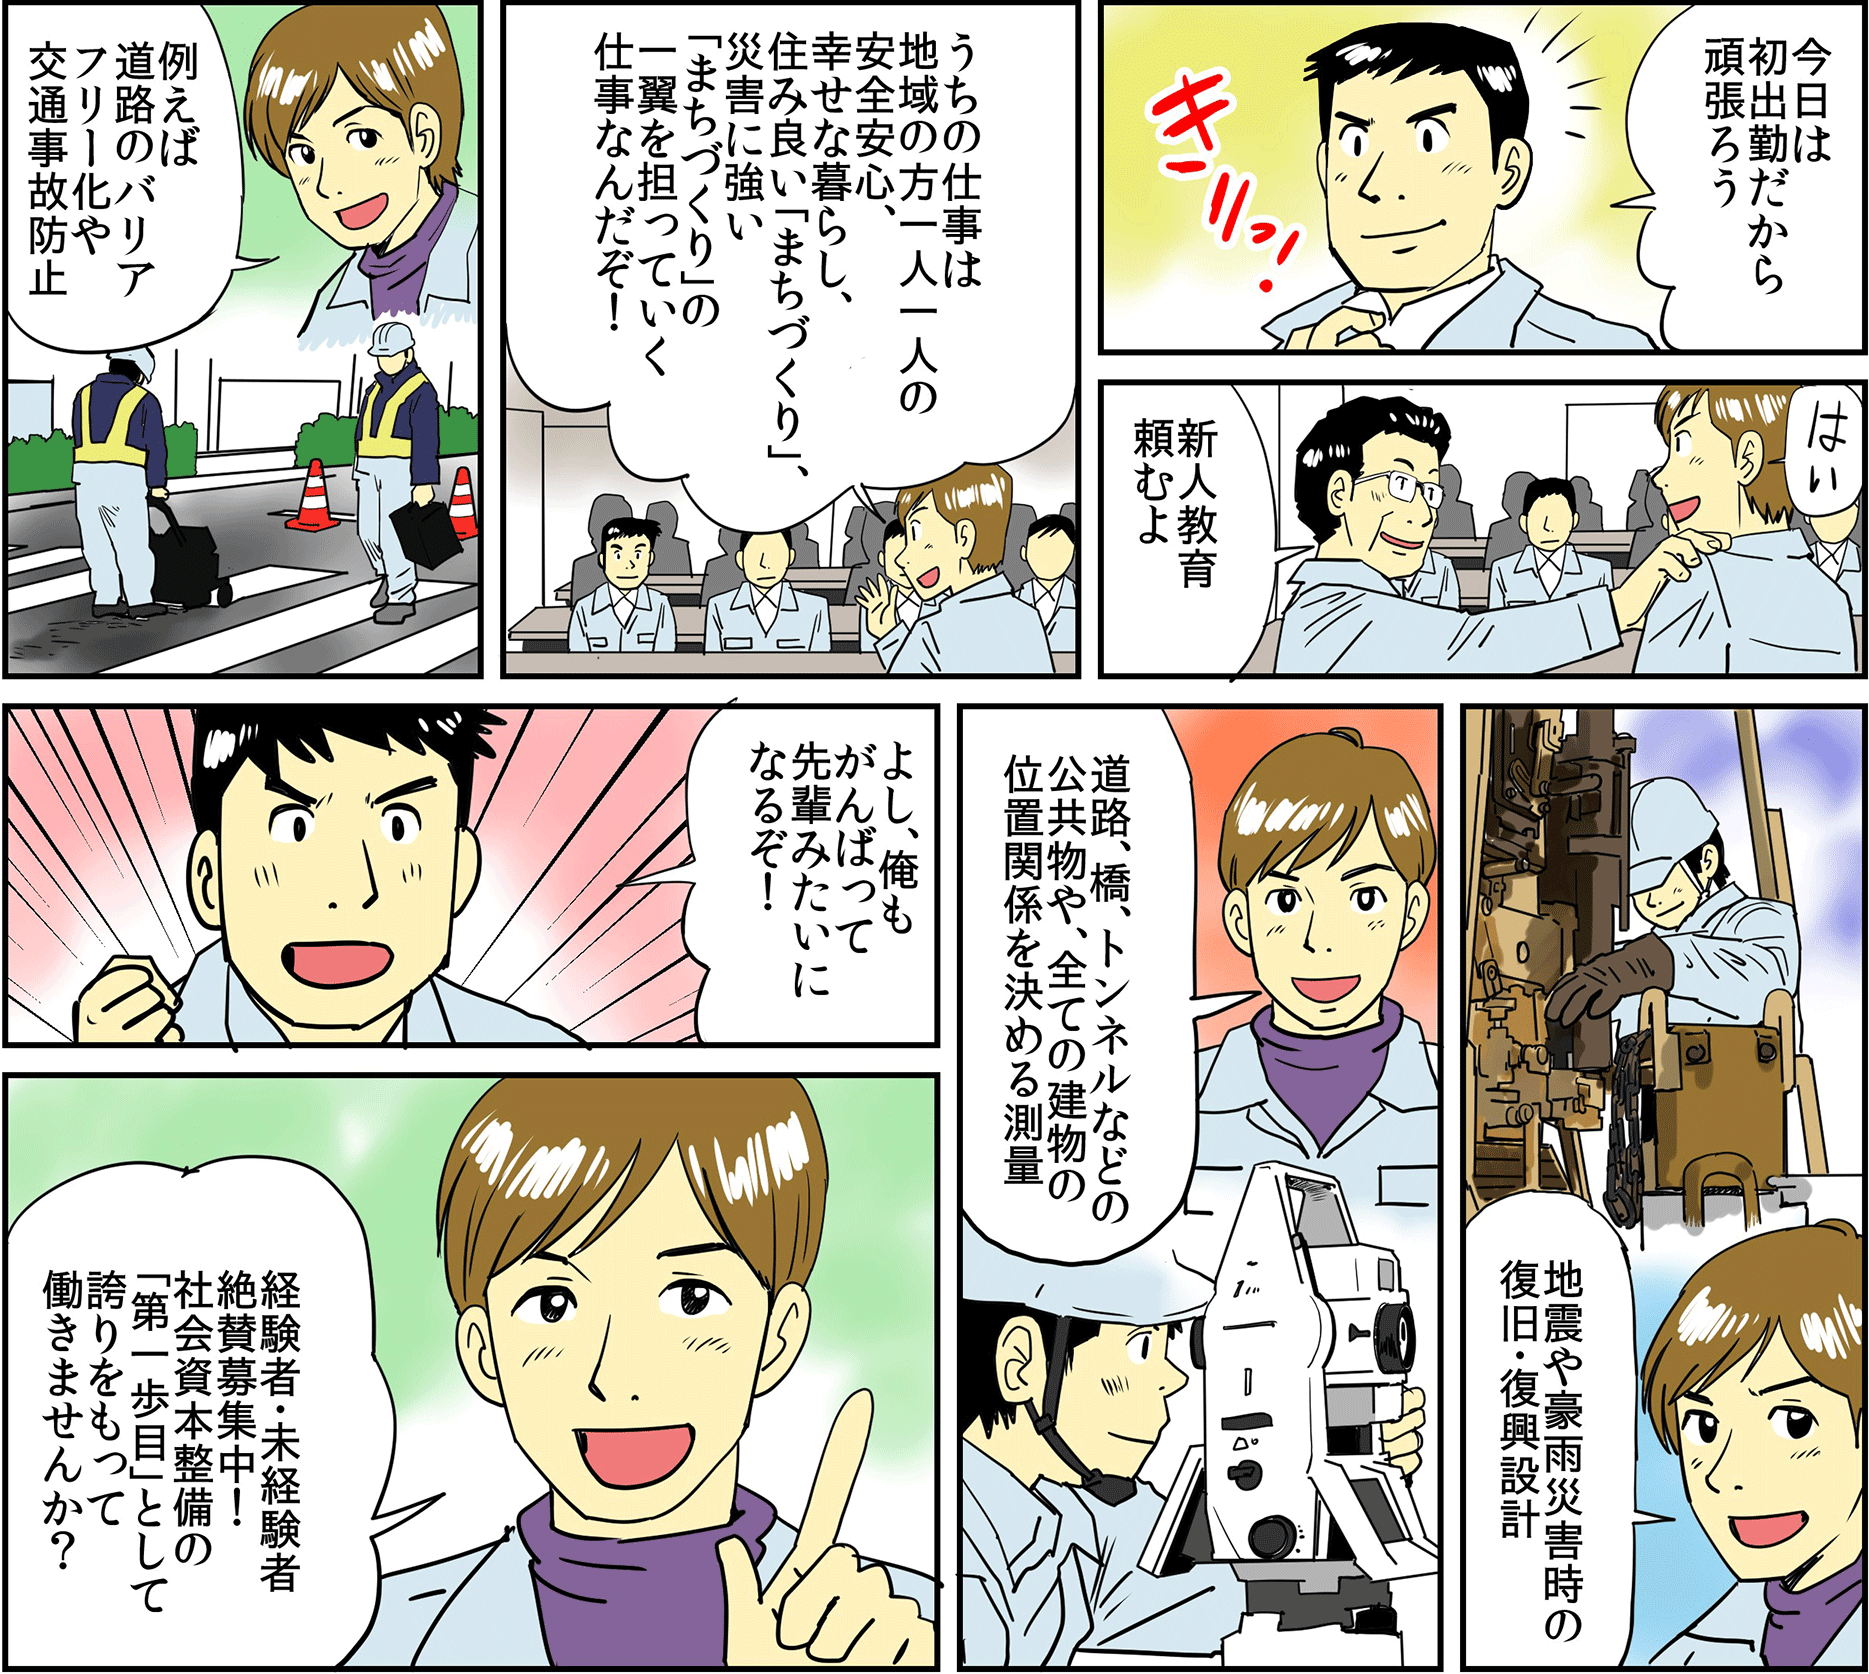 扇コンサルタンツ紹介漫画2